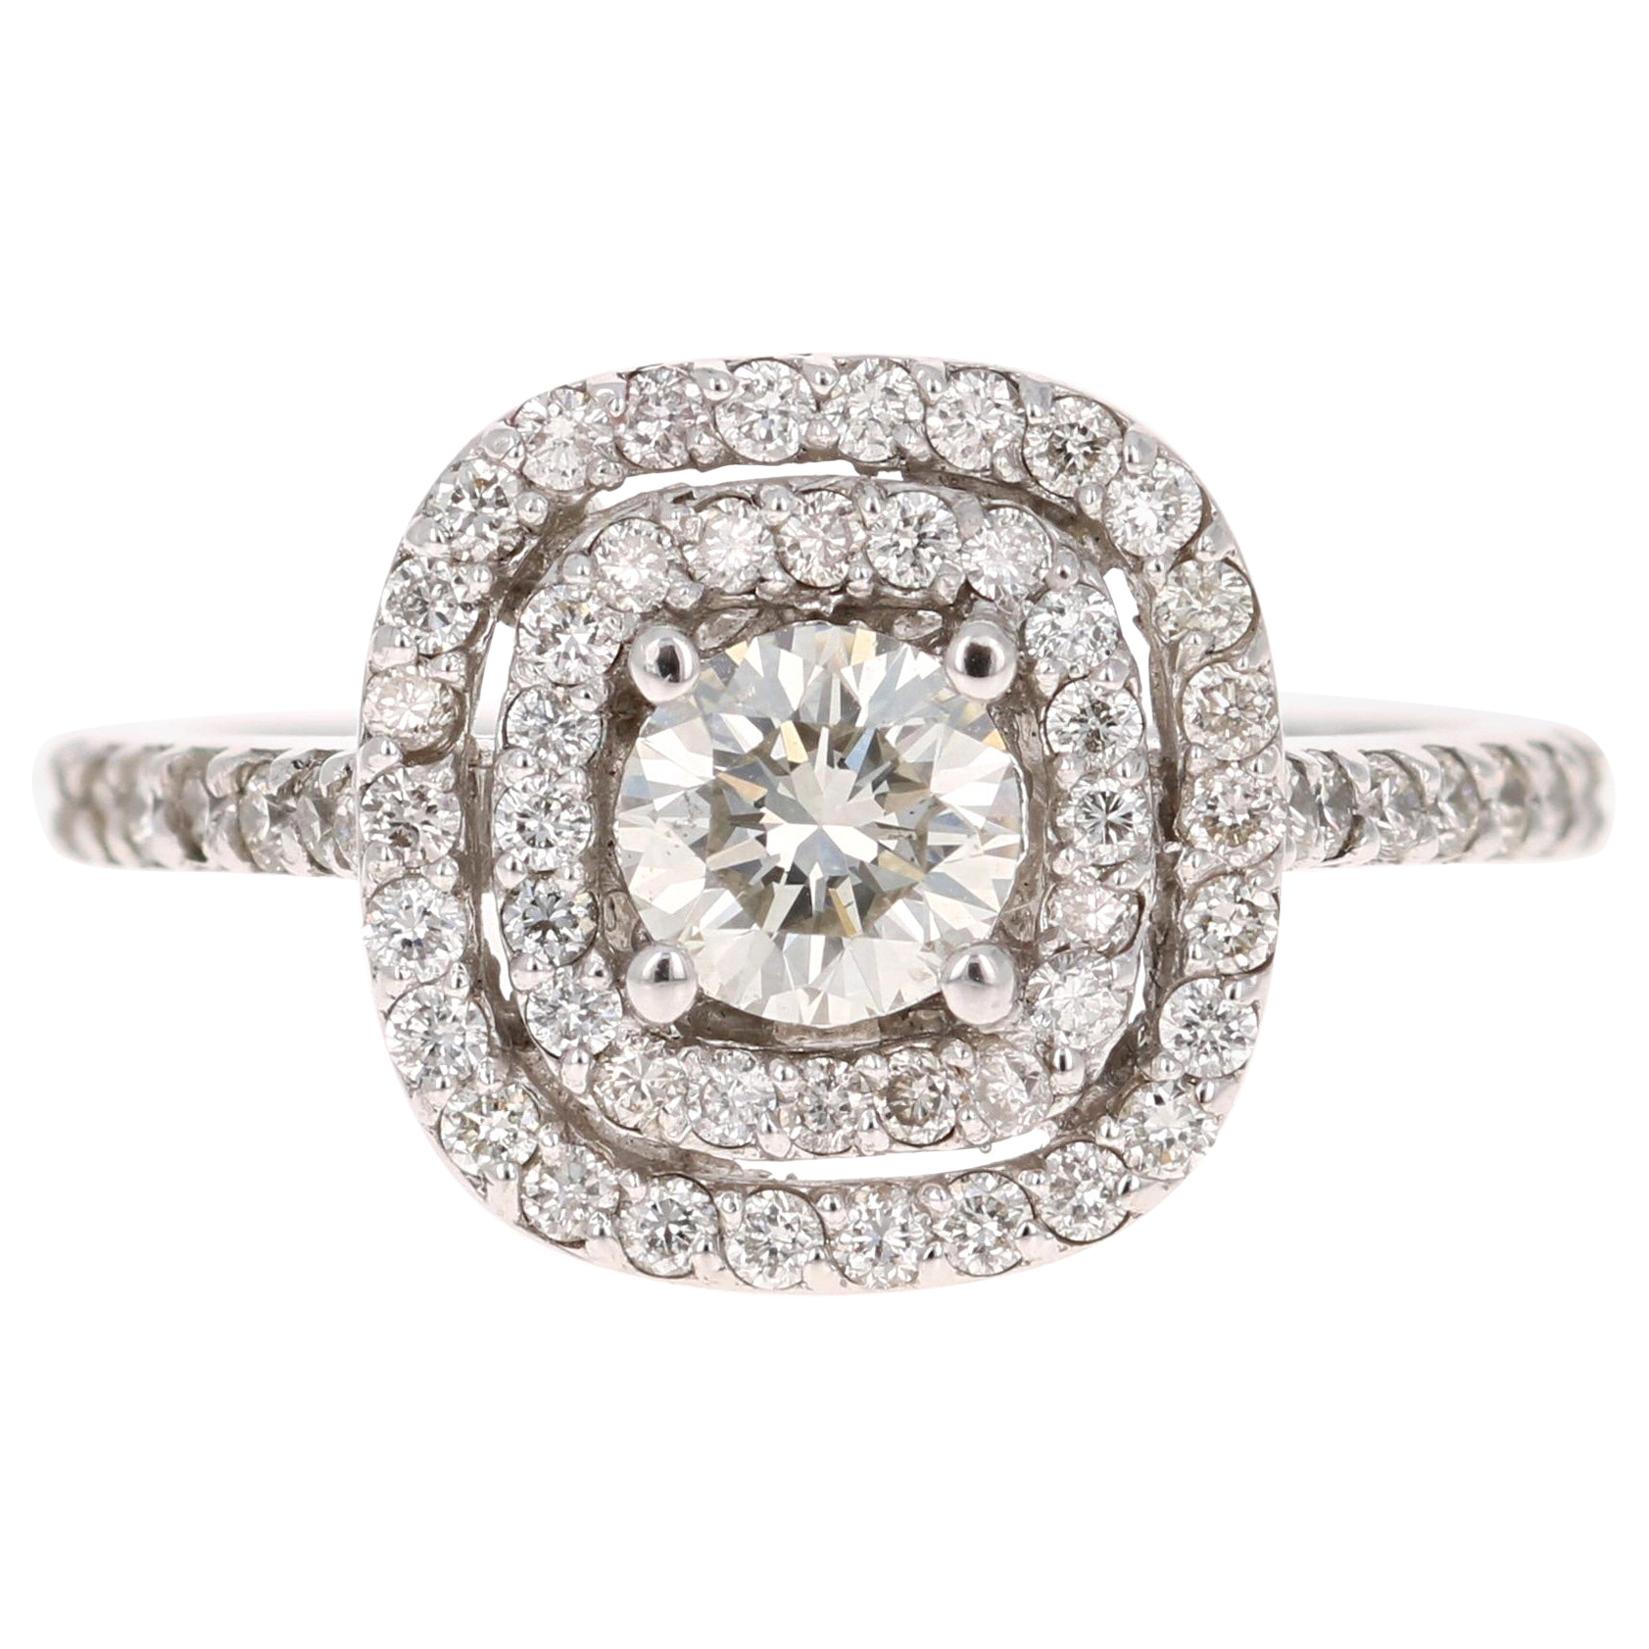 1.02 Carat Diamond Engagement Ring 14 Karat White Gold